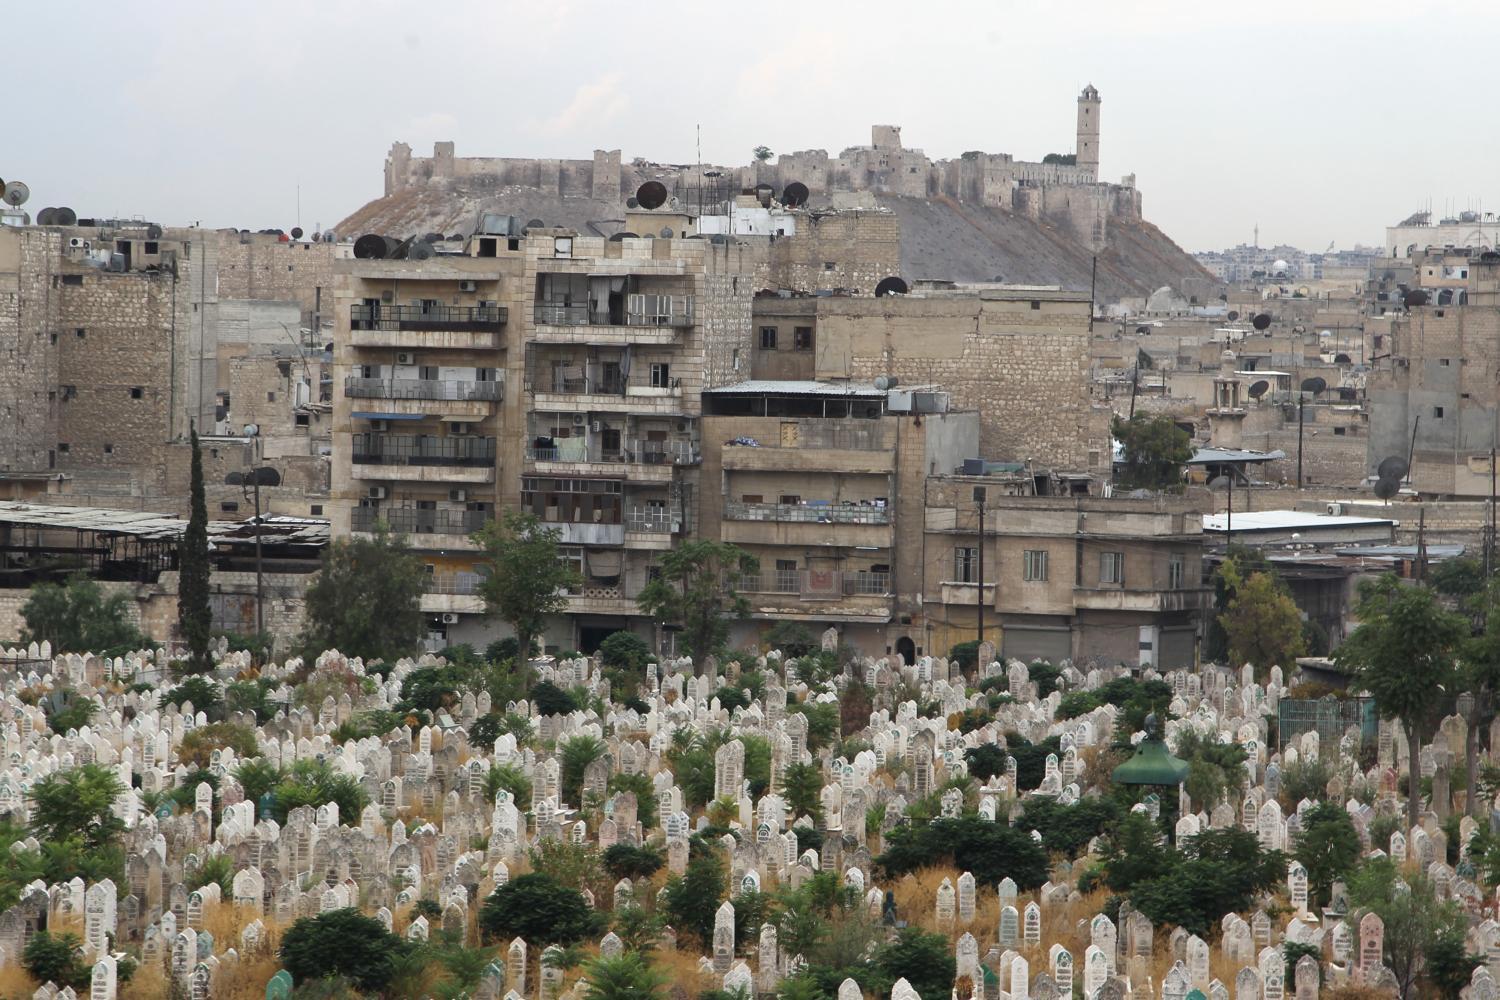 Temető az aleppói citadellánál. Tűzszünetet remélnek